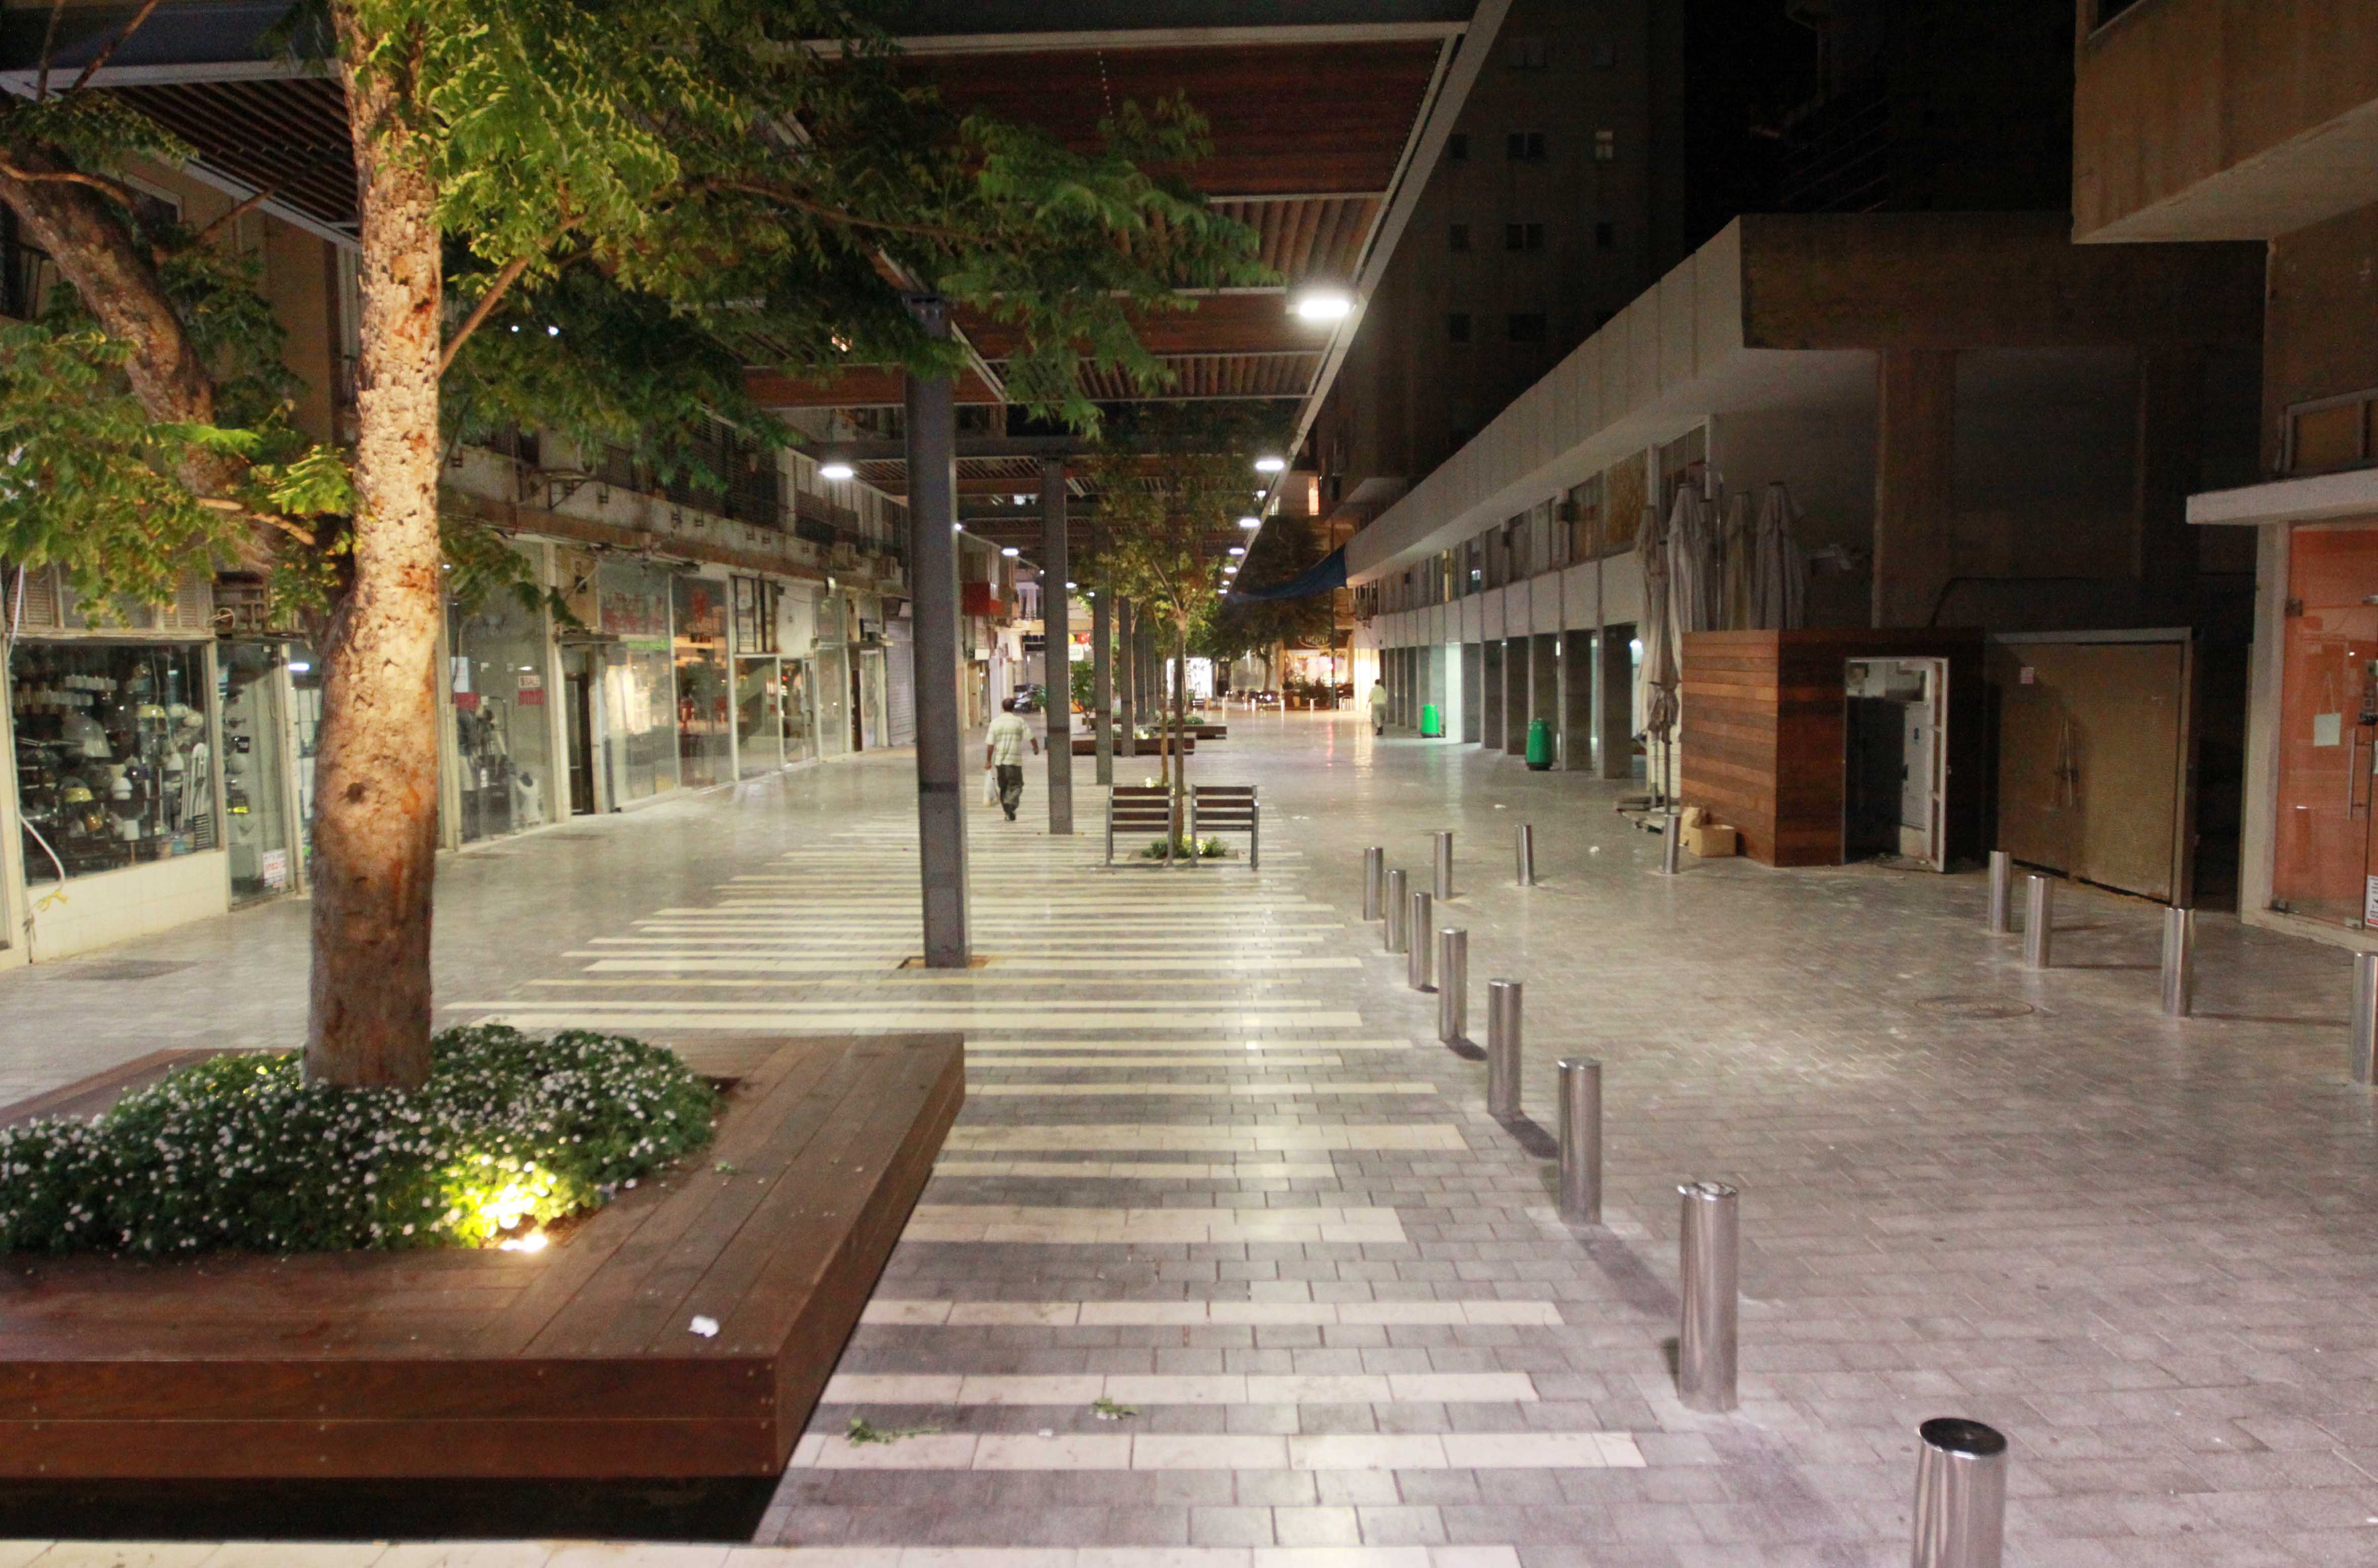 רחוב קראוזה המחודש  בעלות סמלית: חנויות לאמנים ומעצבים ברחוב שטמפפר